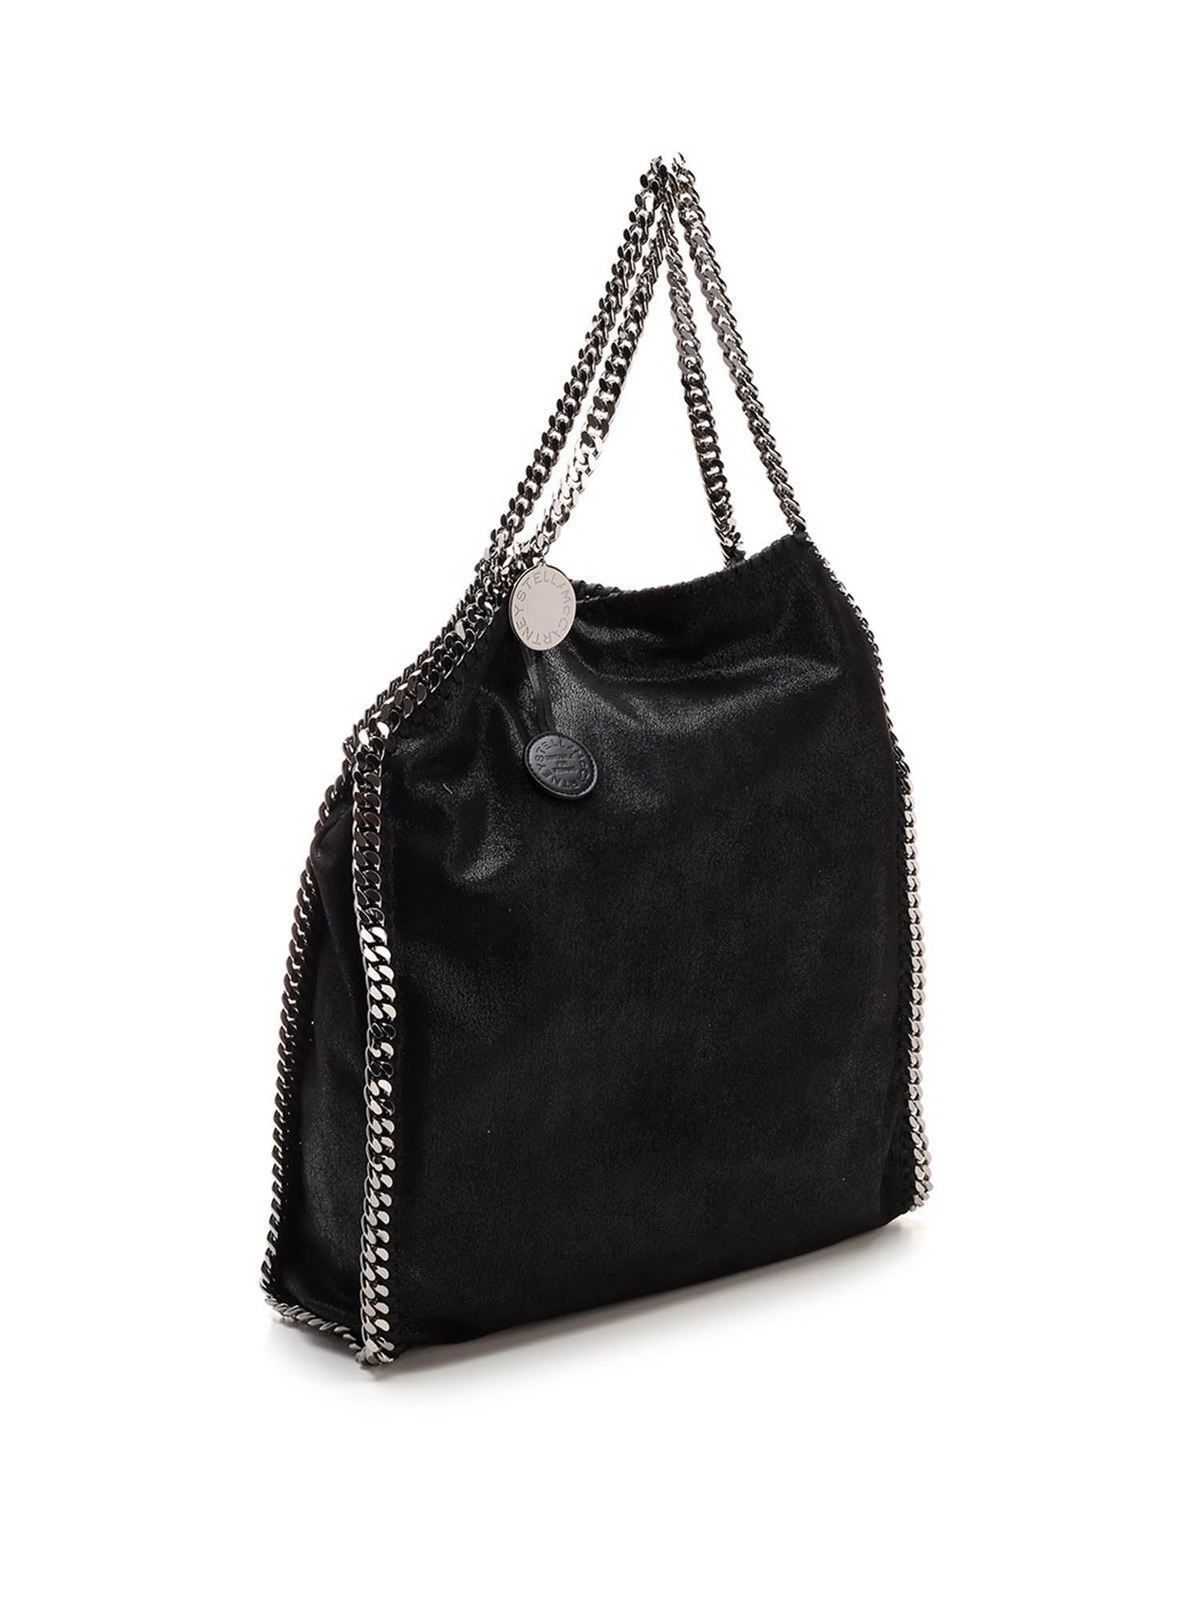 Buy AESTHER EKME Hobo Leather Shoulder Bag - Black At 30% Off